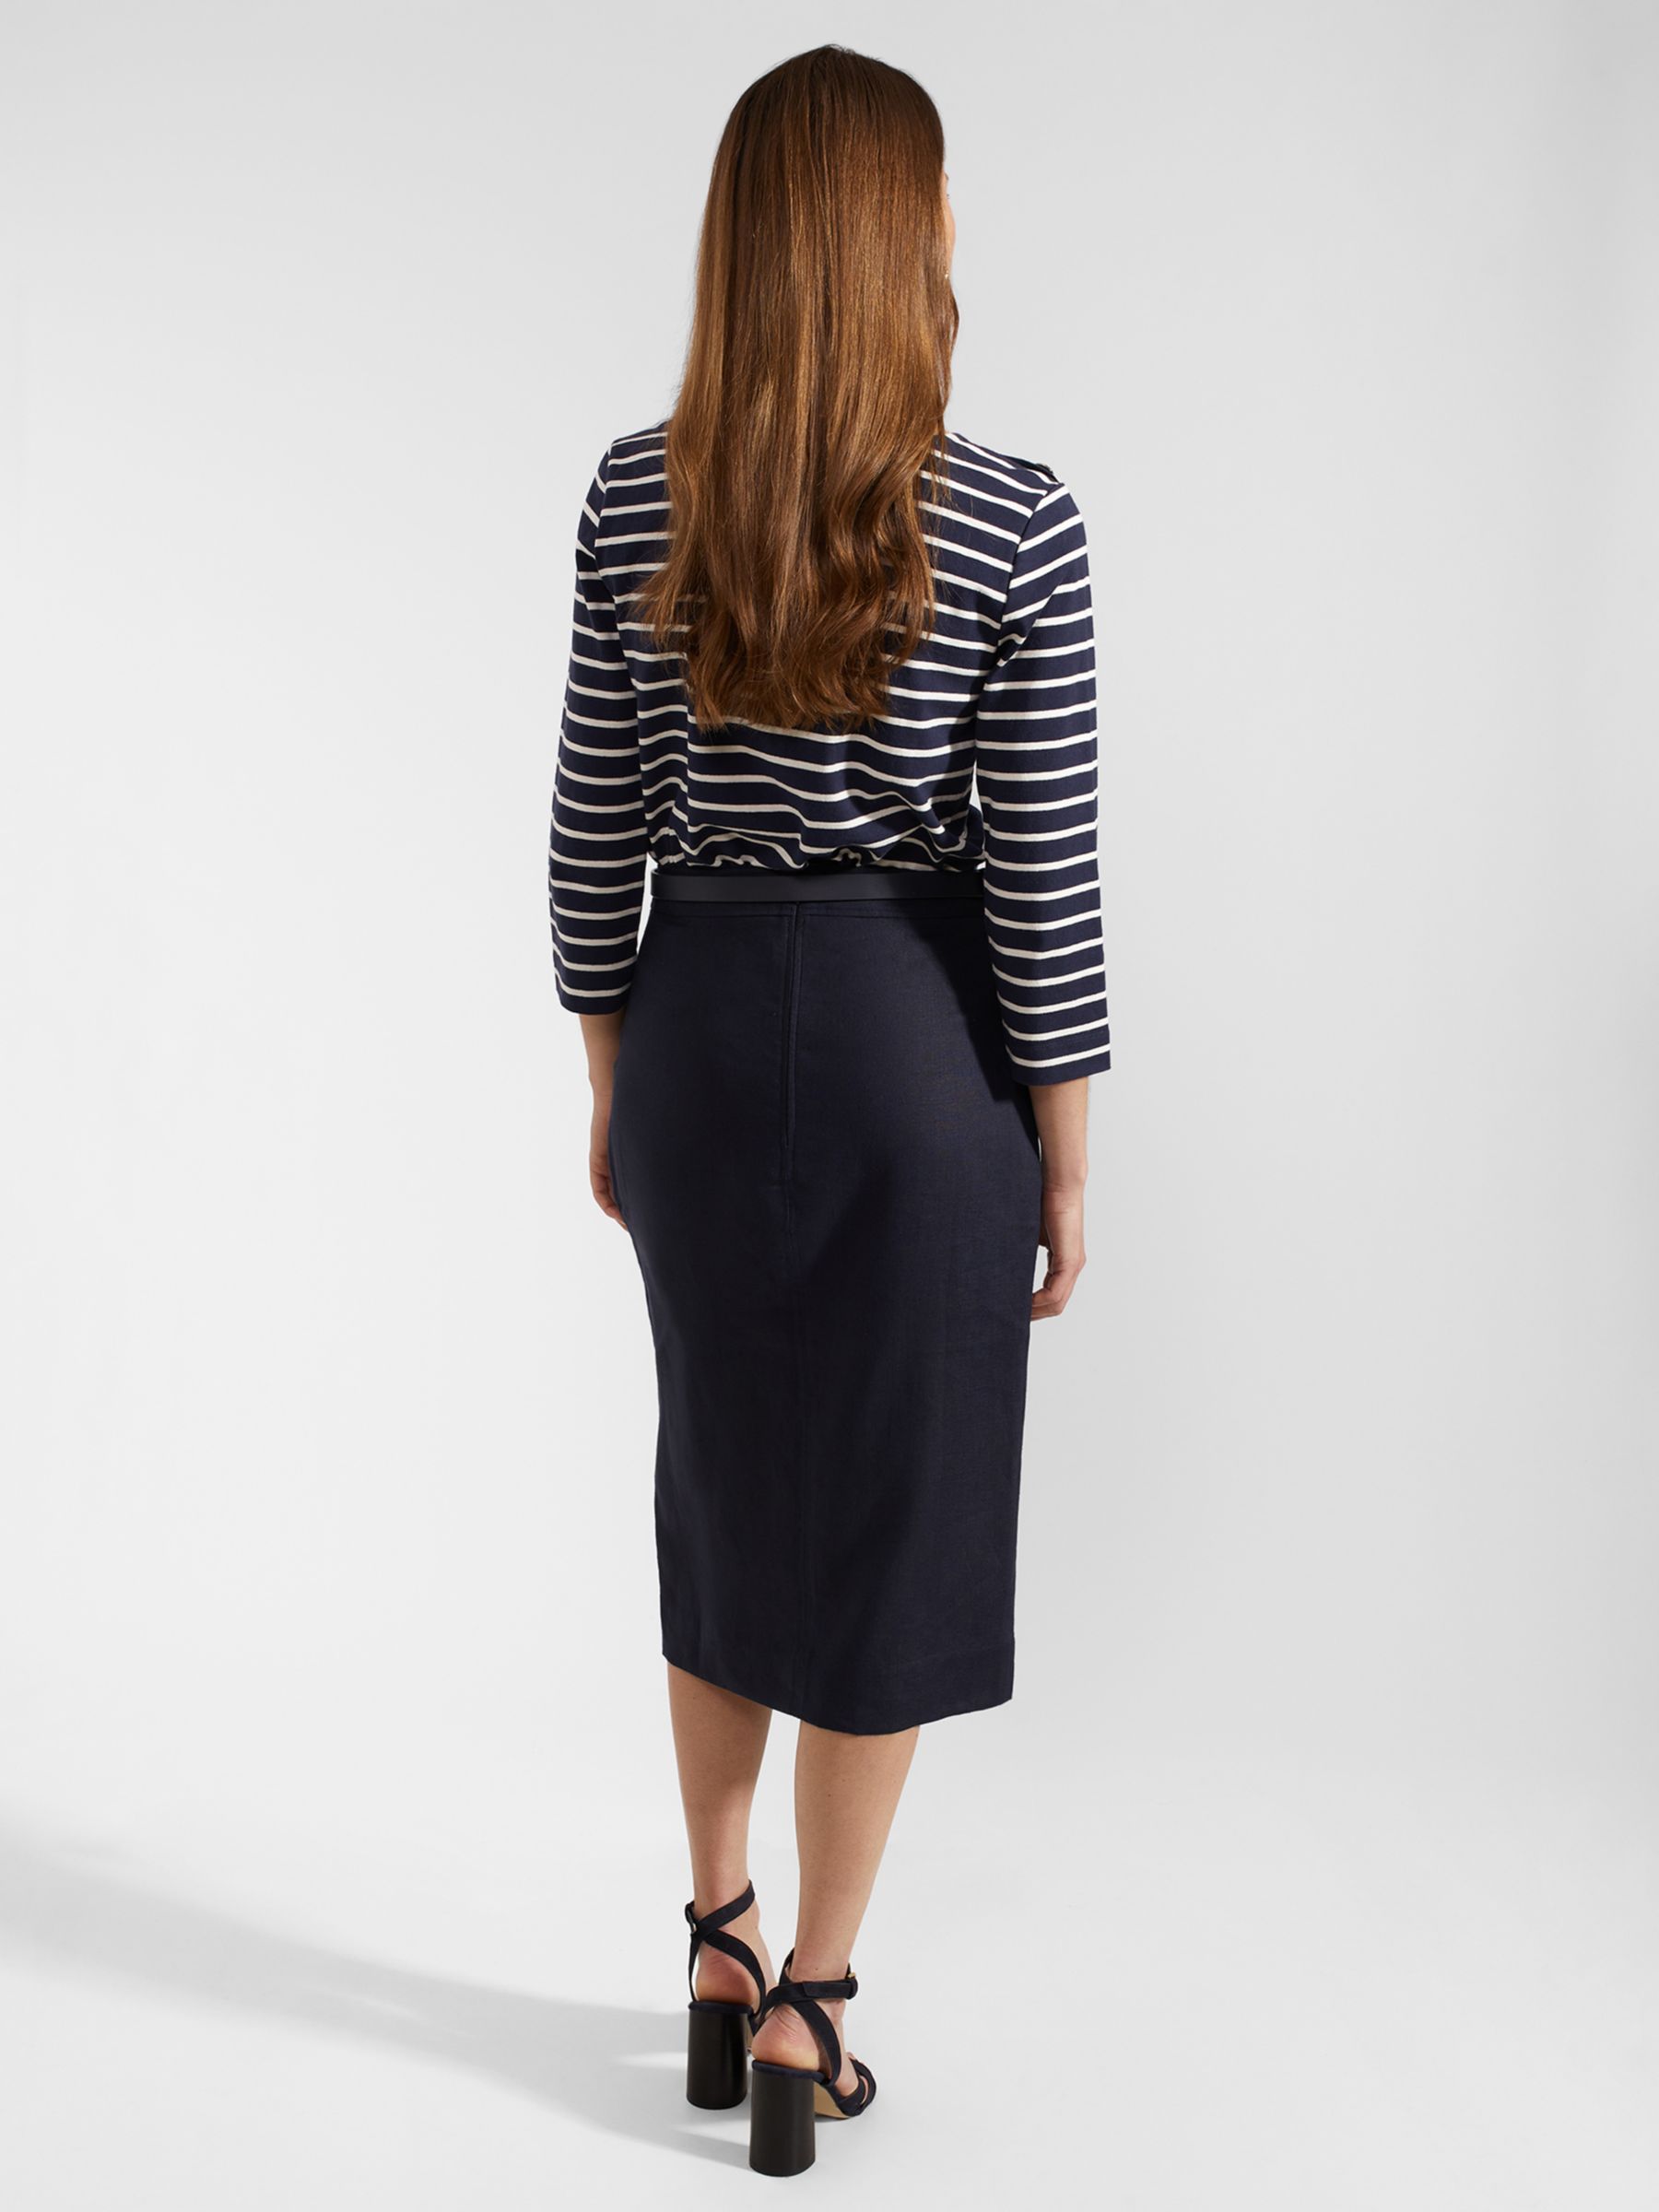 Buy Hobbs Ashleigh Linen Midi Pencil Skirt, Navy Online at johnlewis.com